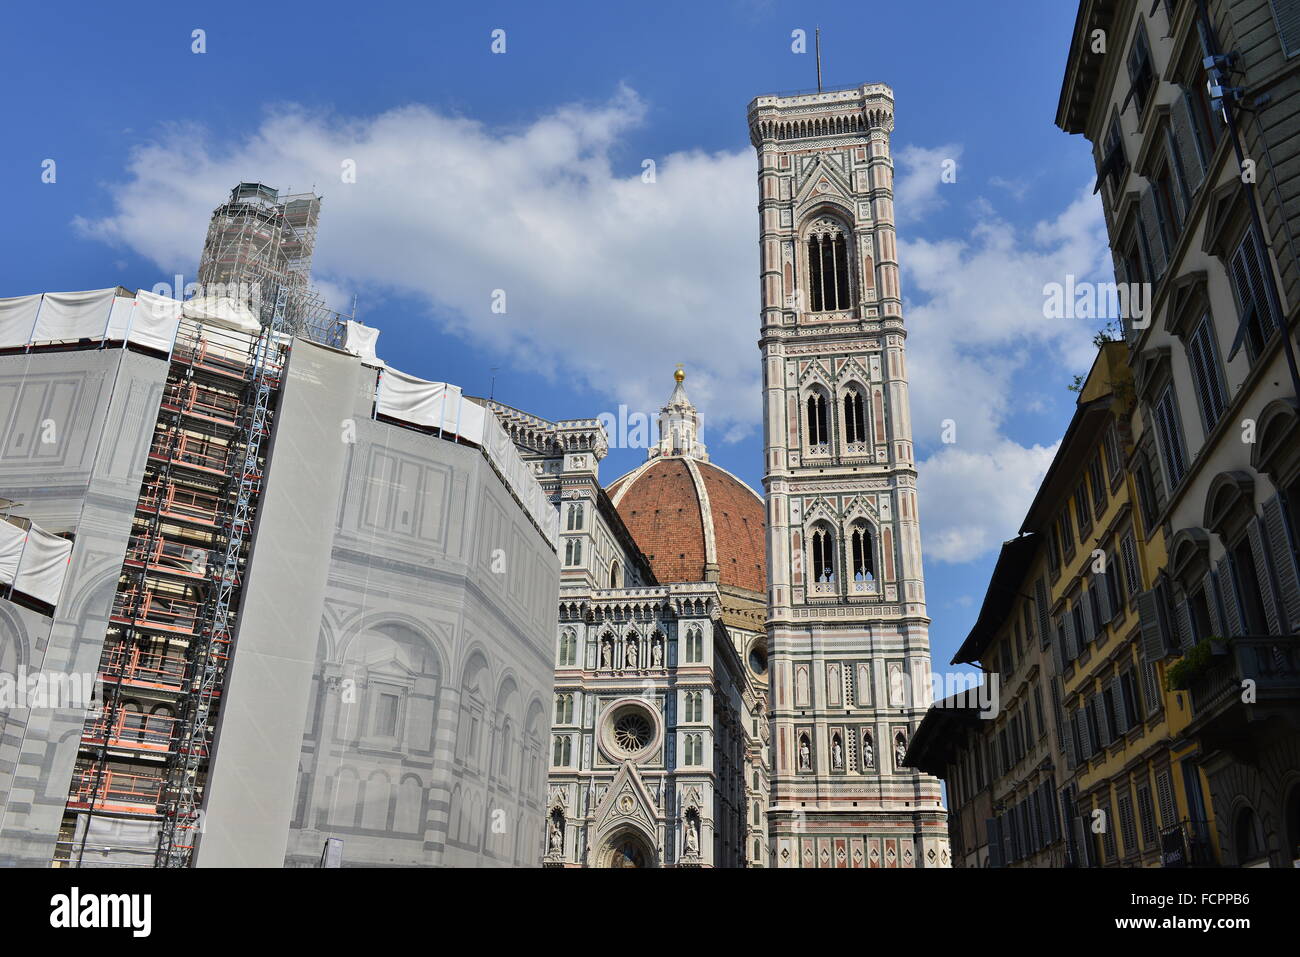 The Cattedrale di Santa Maria del Fiore, Florence, Italy Stock Photo